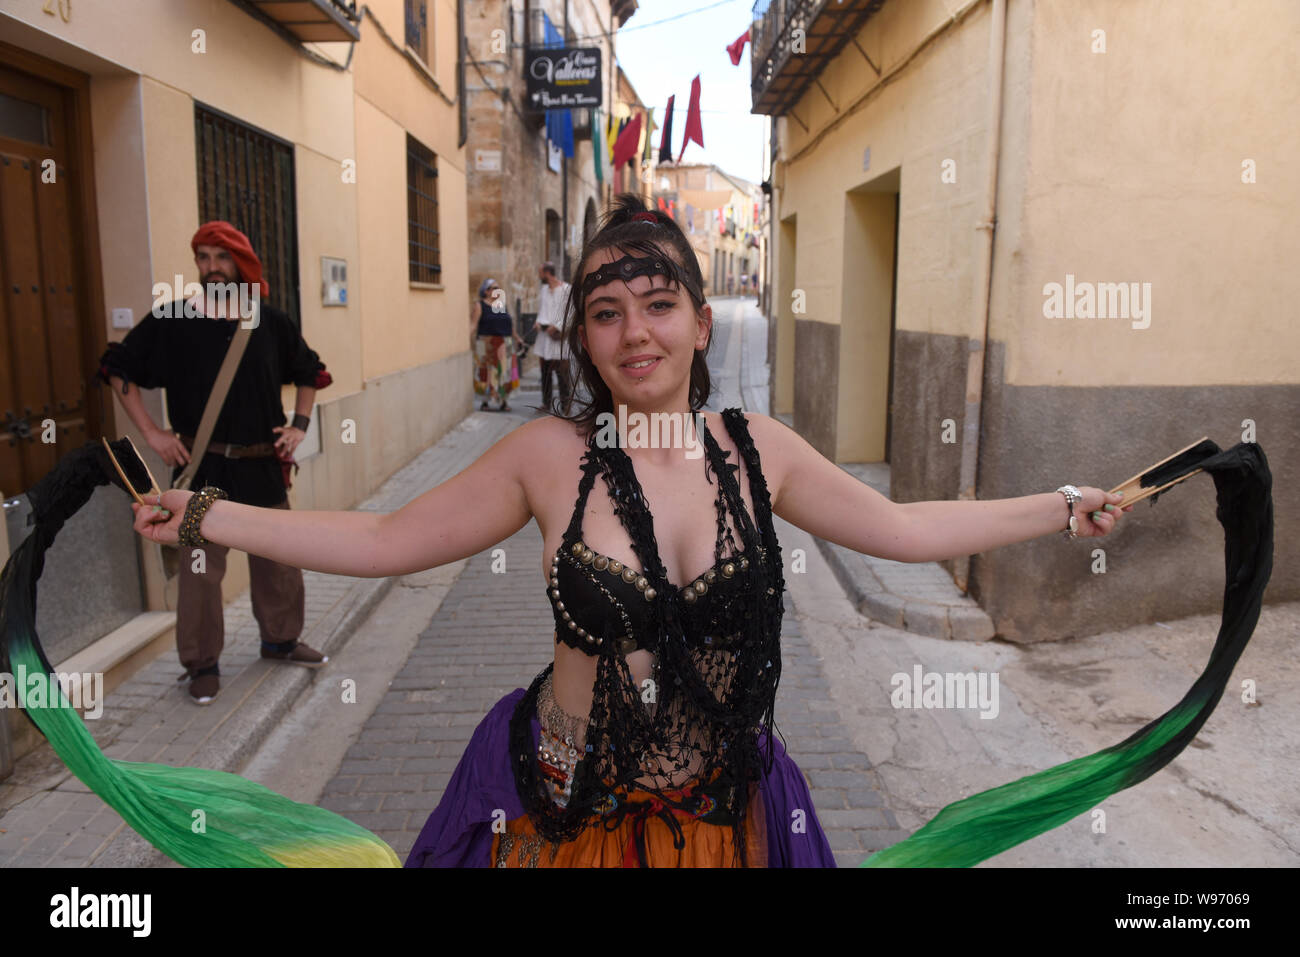 Une femme vêtue d'un costume pose pour une photo lors de la fête.Le village de Berlanga de Duero, au nord de l'Espagne célèbre un marché médiéval qui vise à récupérer la tradition commerciale, festival culturel de rassemblement, devenu populaire et de coexistence entre tous les voisins et les visiteurs. Banque D'Images